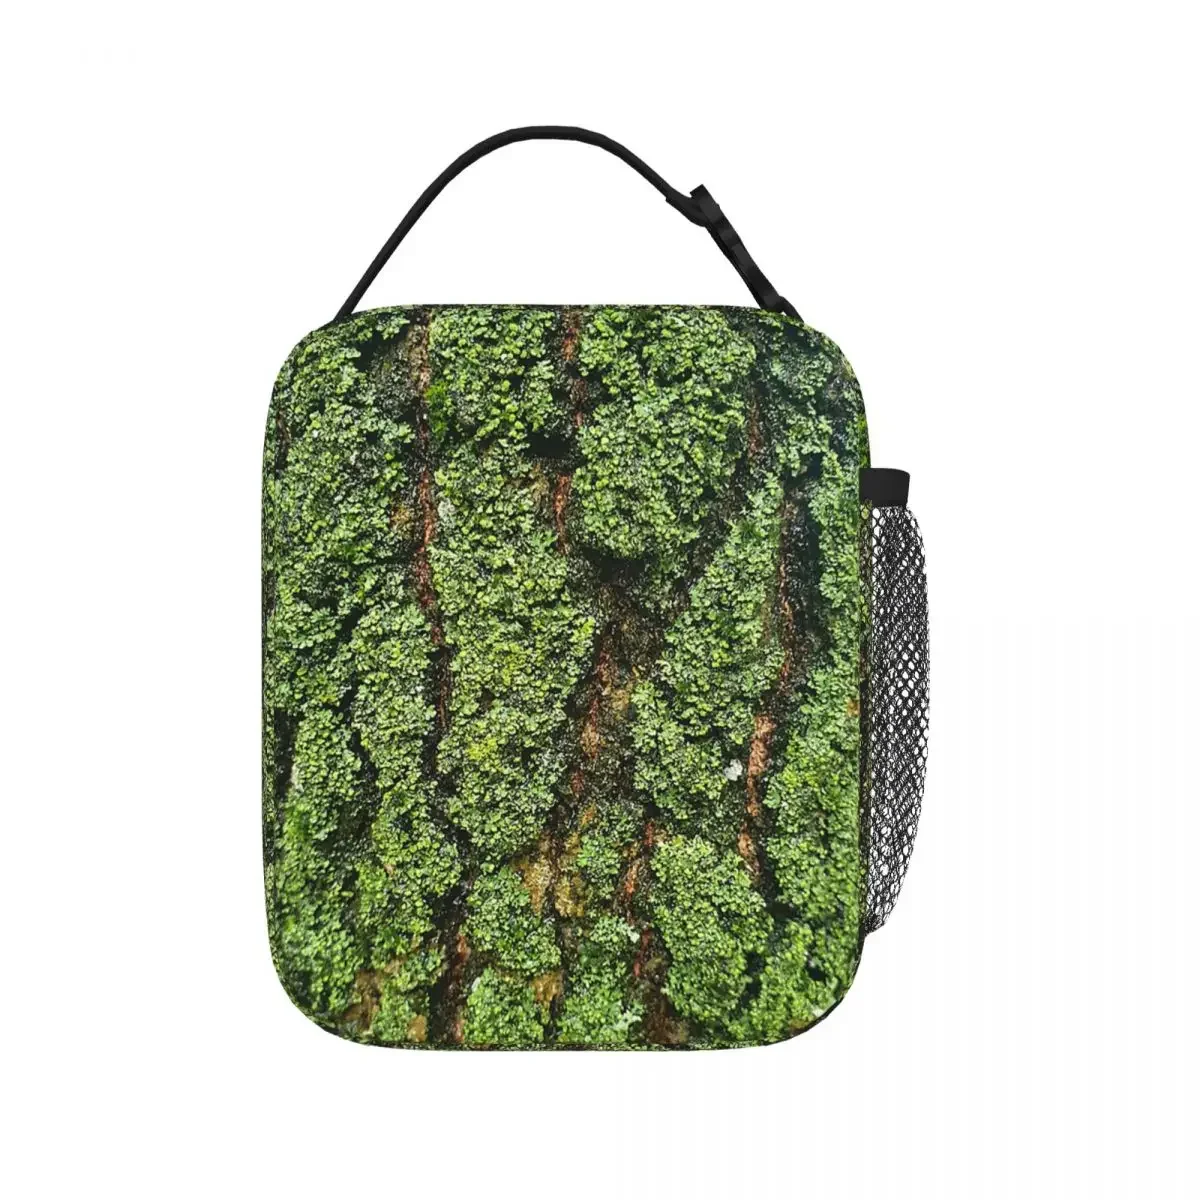 Камуфляжные сумки для ланча из зеленой коры дерева, изолированная сумка для ланча, переносная коробка для бенто, герметичные сумки для пикника для женщин, студенток, школ